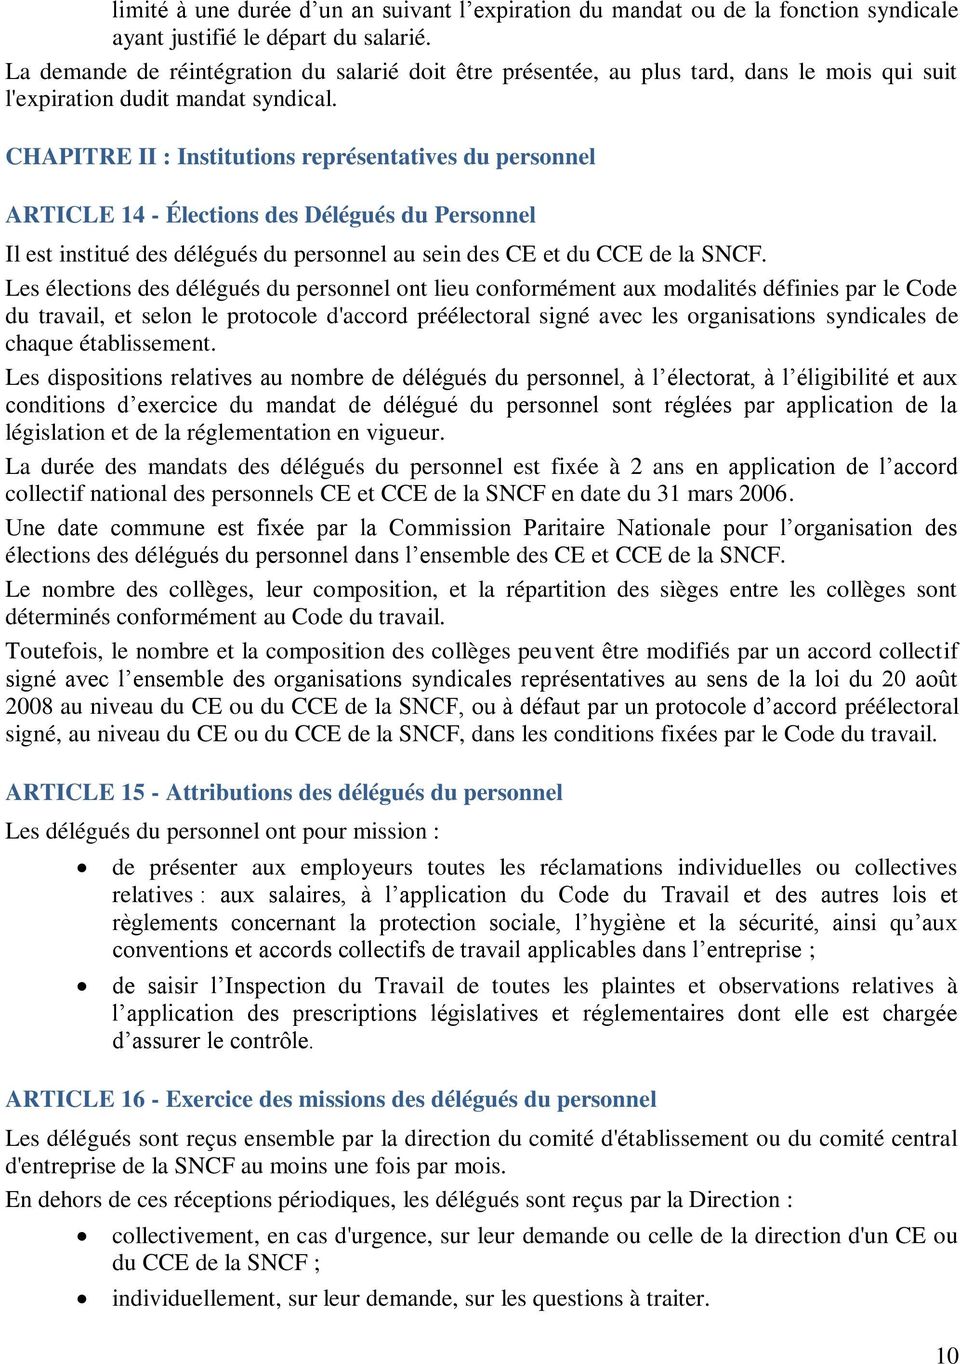 CHAPITRE II : Institutions représentatives du personnel ARTICLE 14 - Élections des Délégués du Personnel Il est institué des délégués du personnel au sein des CE et du CCE de la SNCF.